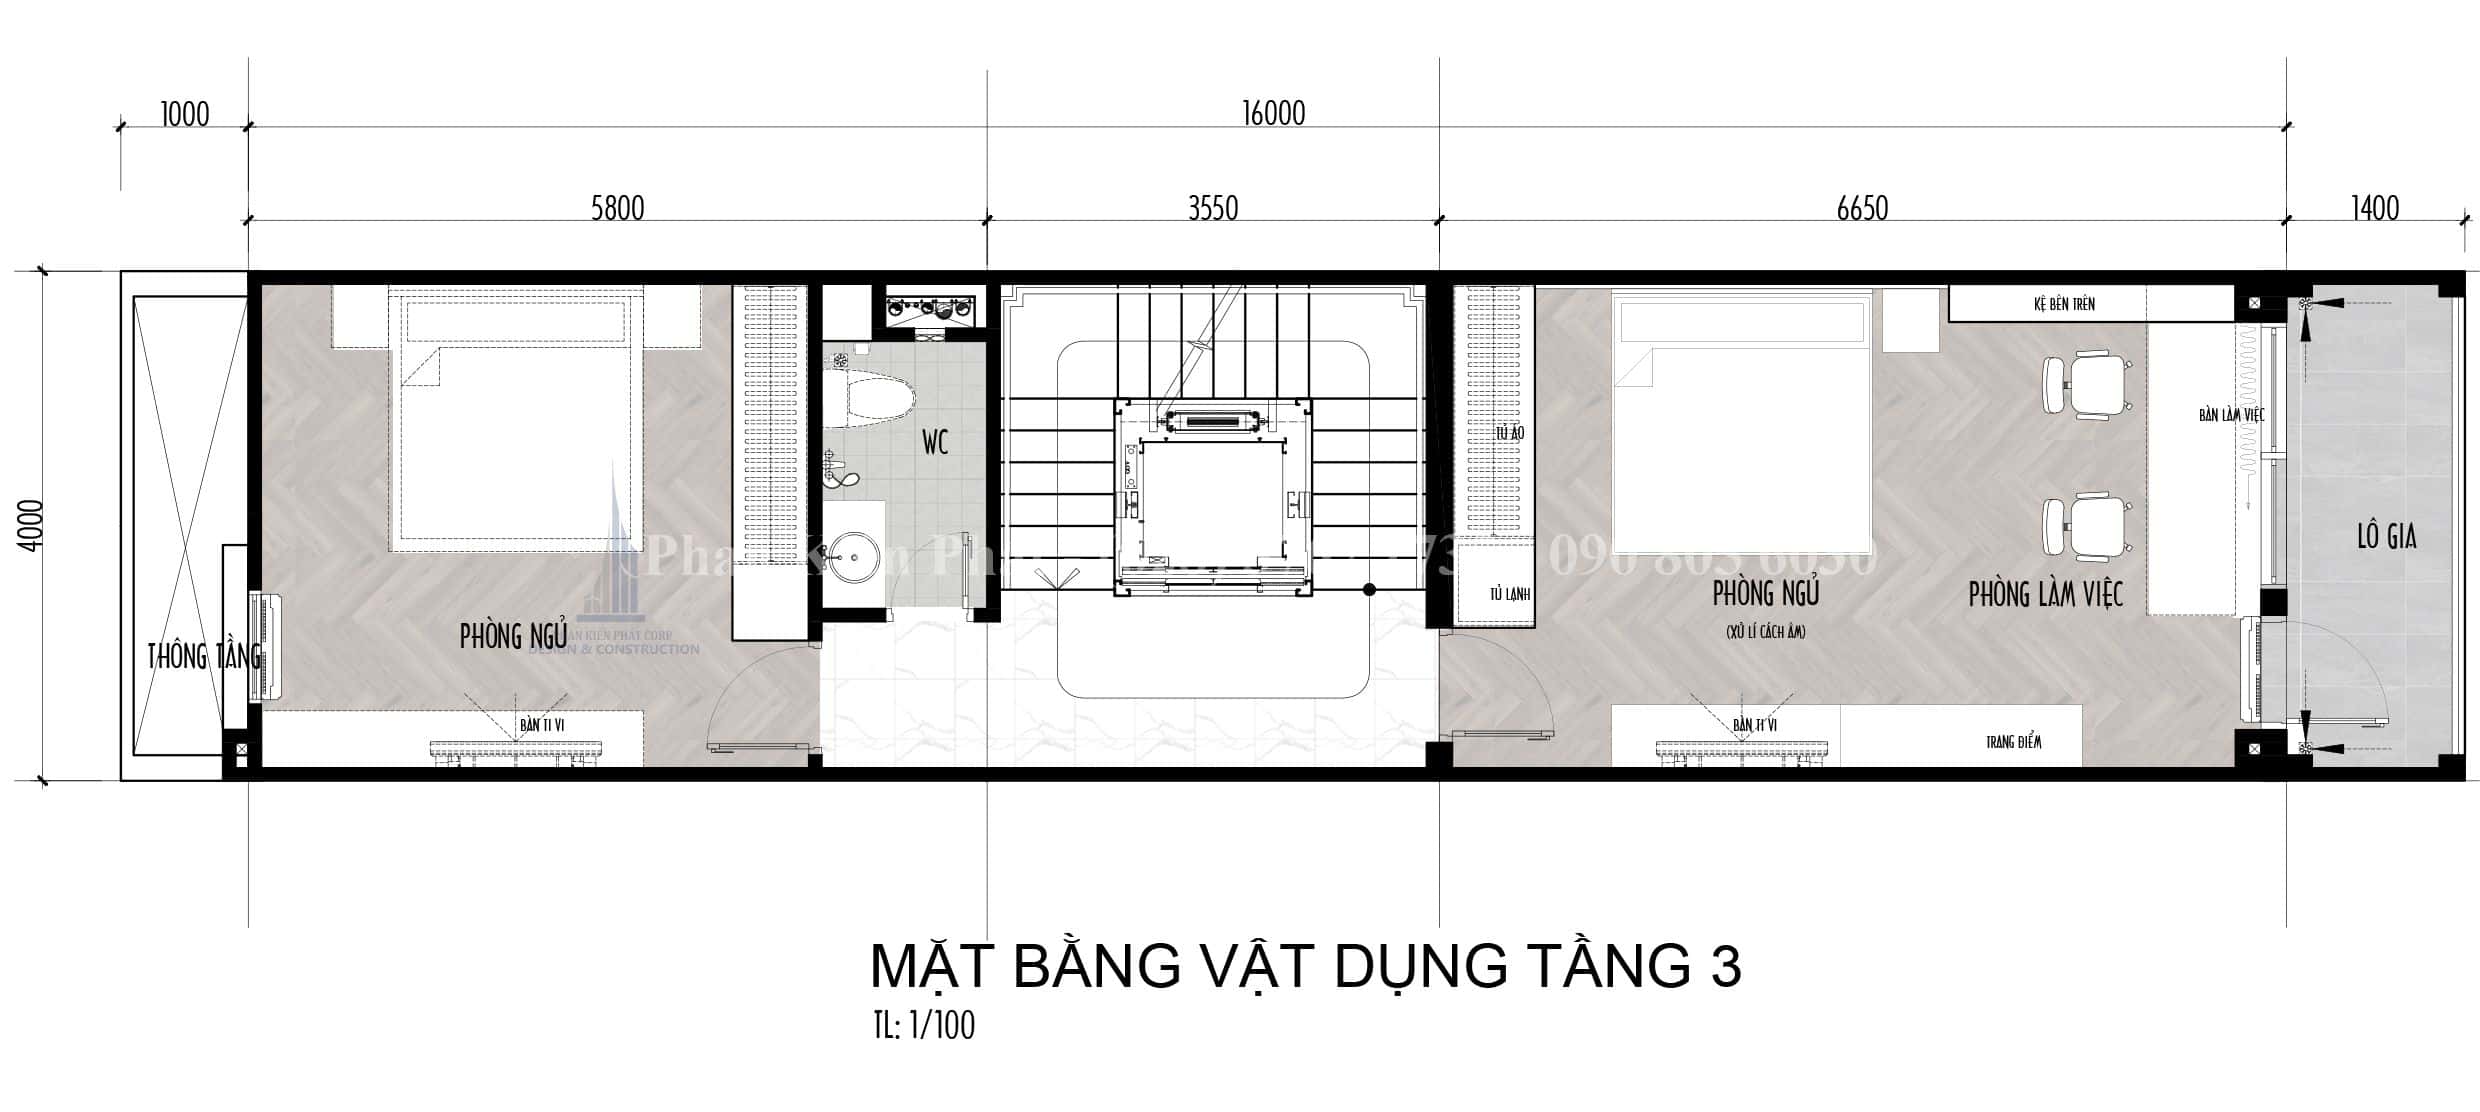 Mat Bang Cong Nang Nha 4x16 M 4 Phong Ngu Hien Dai 4